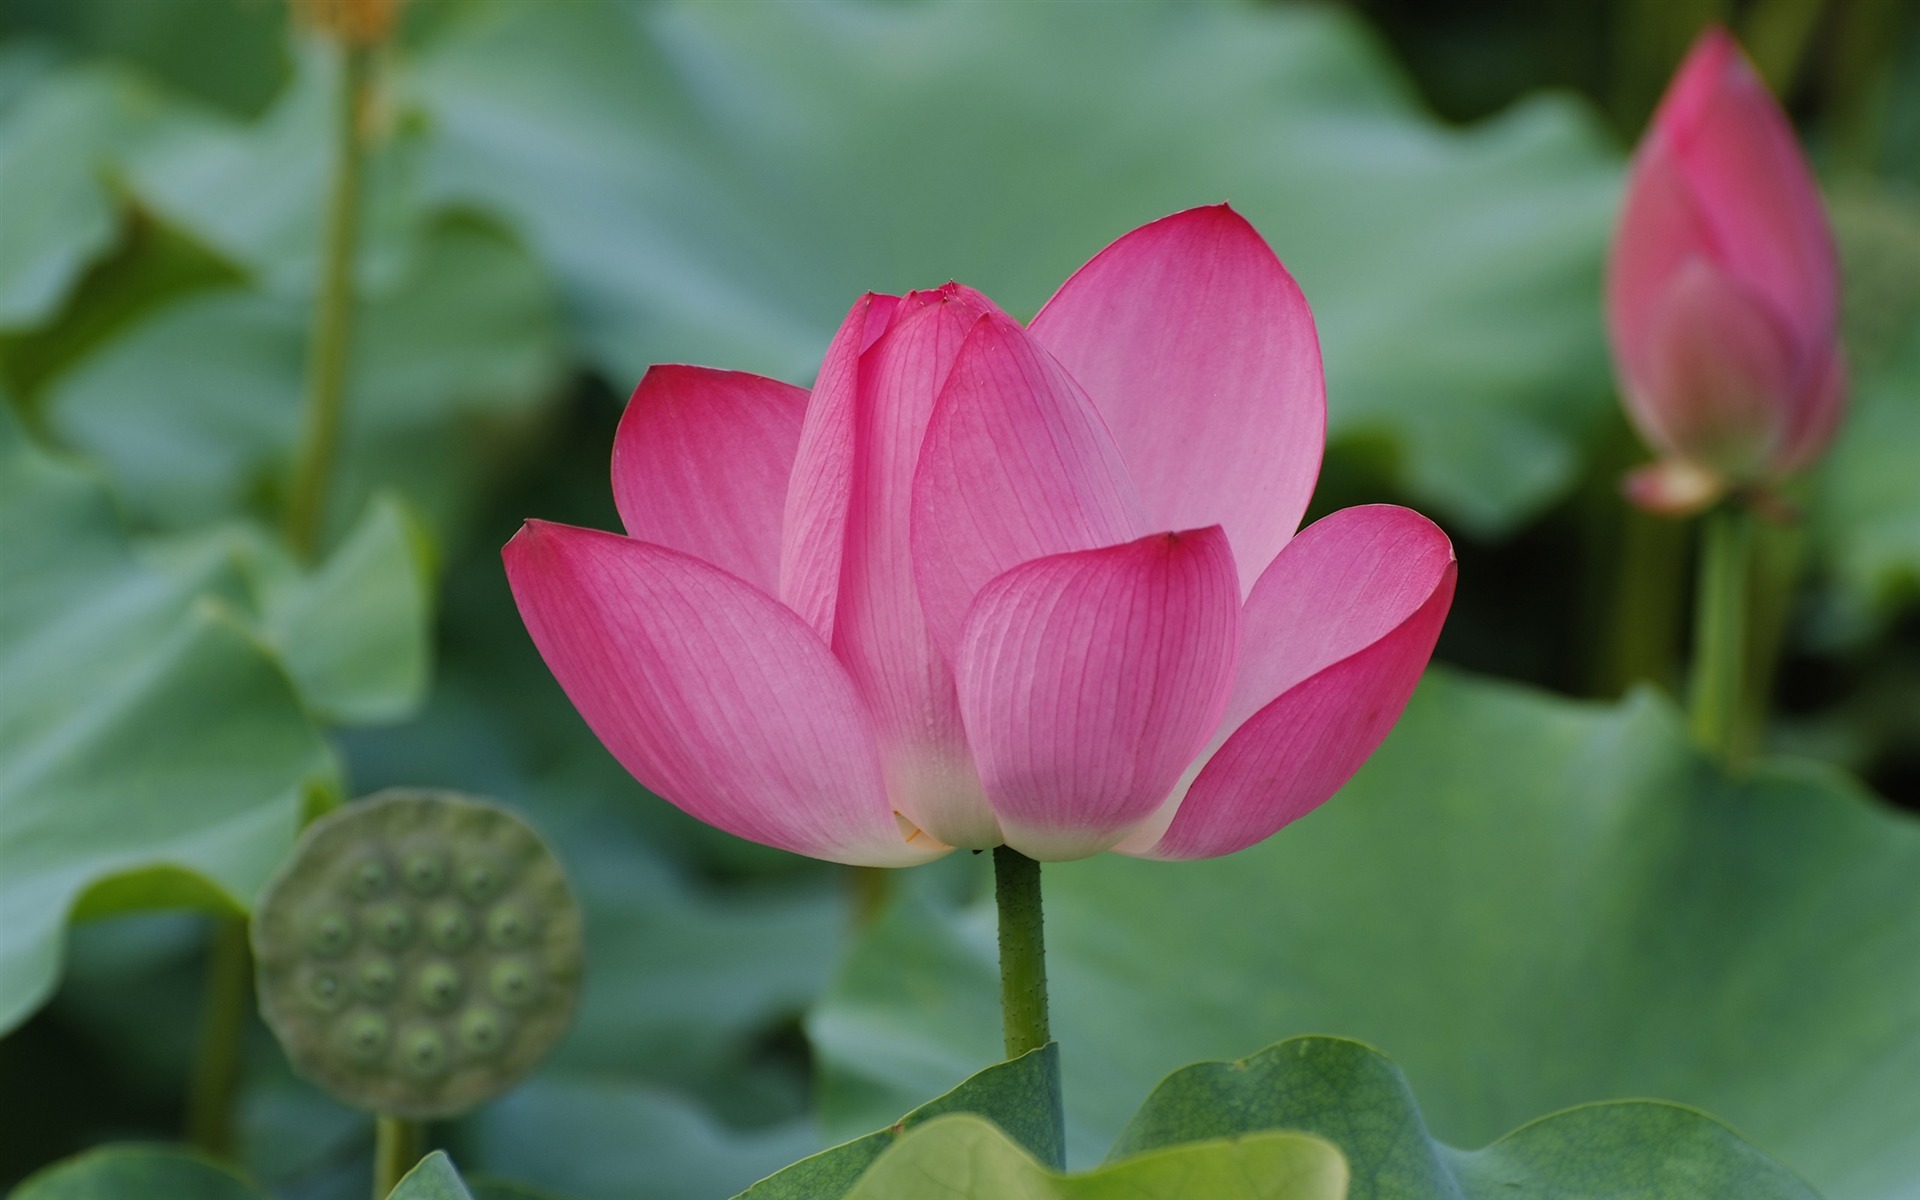 Rose Garden of the Lotus (rebar works) #8 - 1920x1200